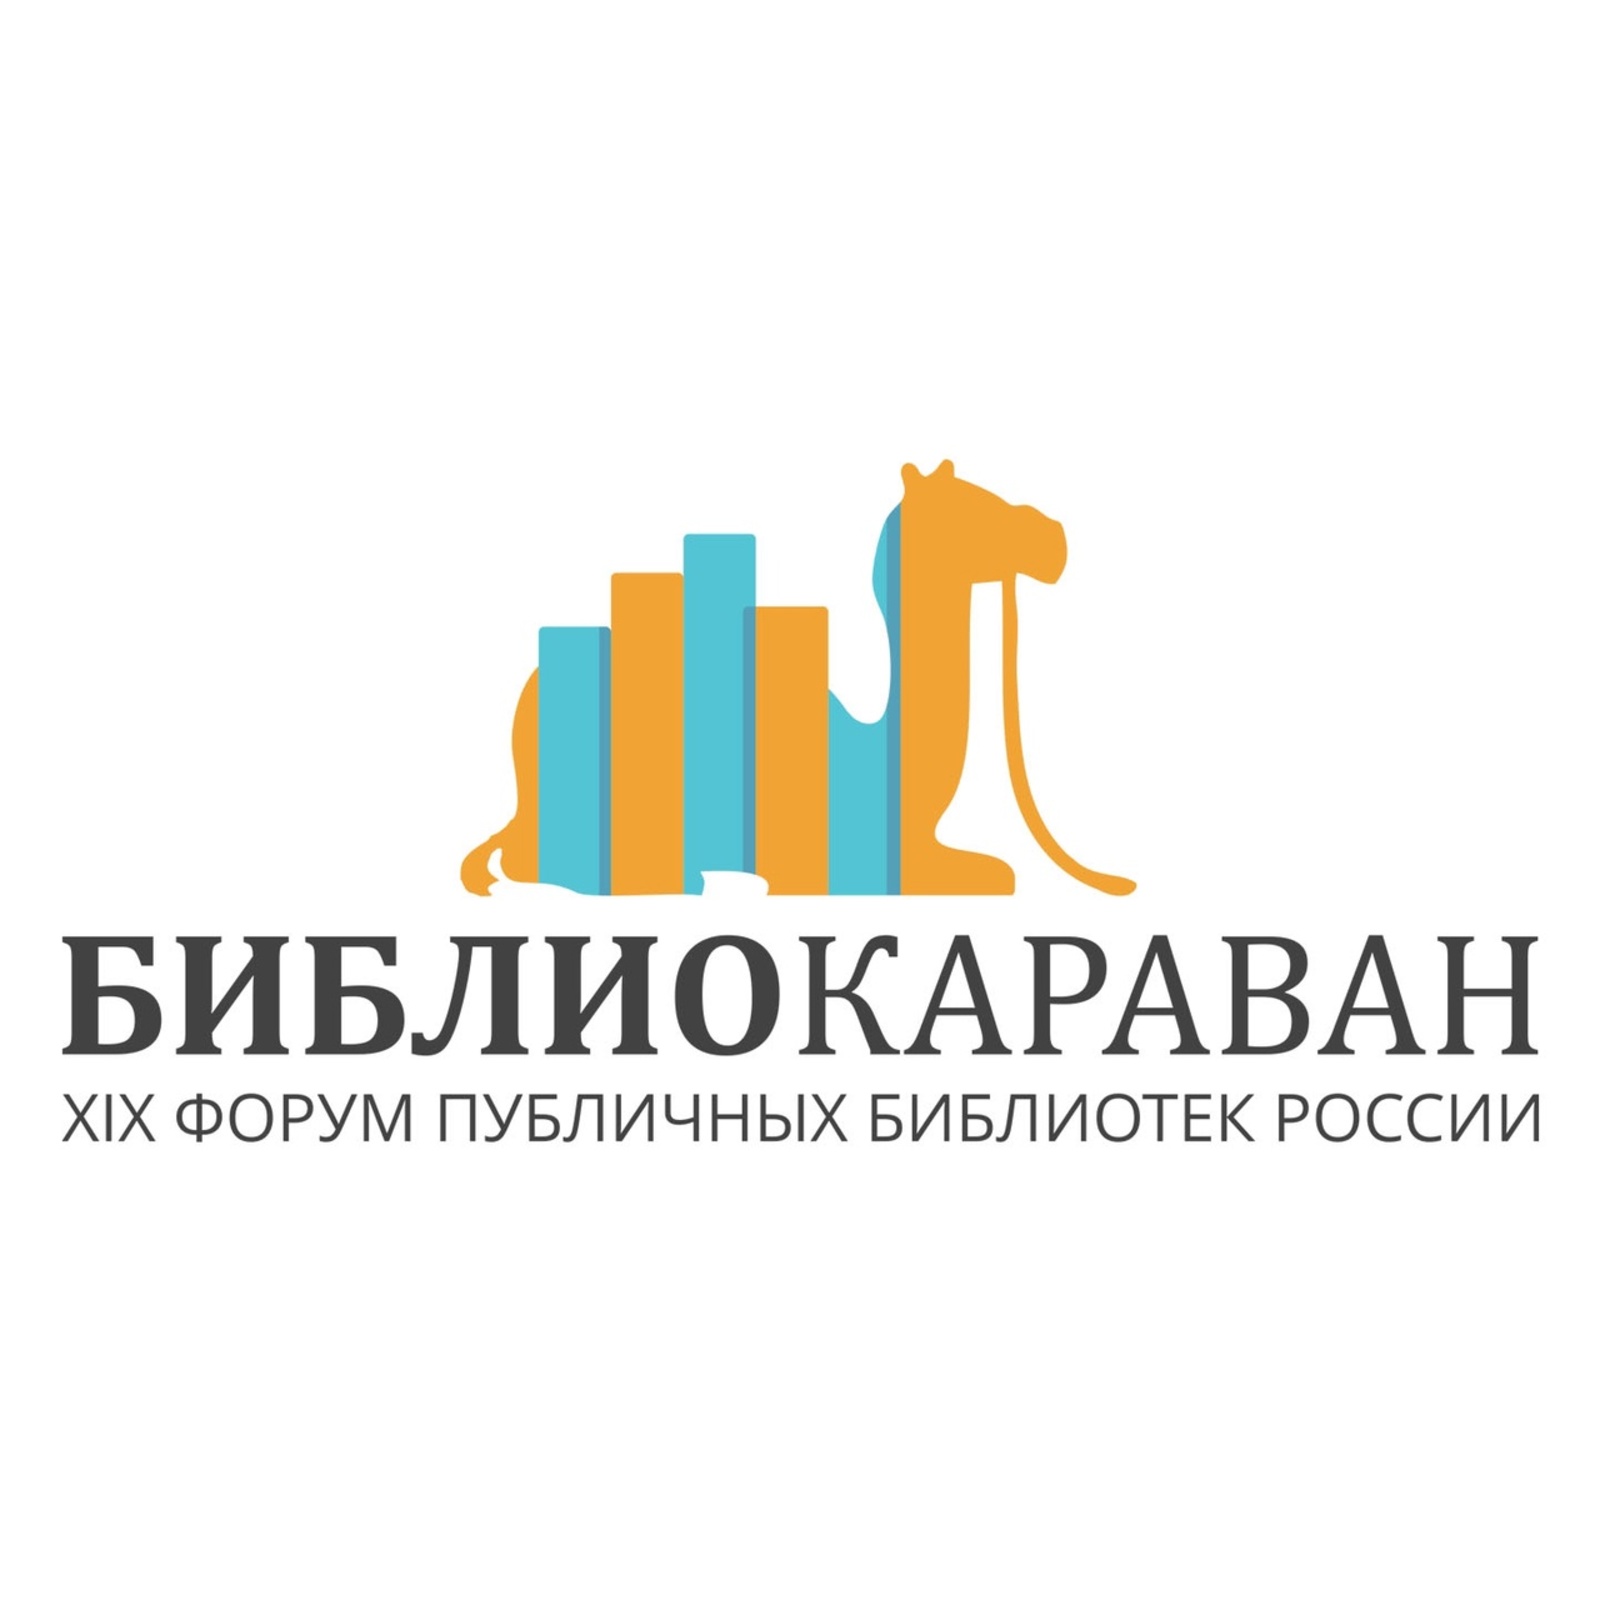 Нефтекамск принял участие в ХIХ Форуме публичных библиотек России «Библиокараван – 2021»